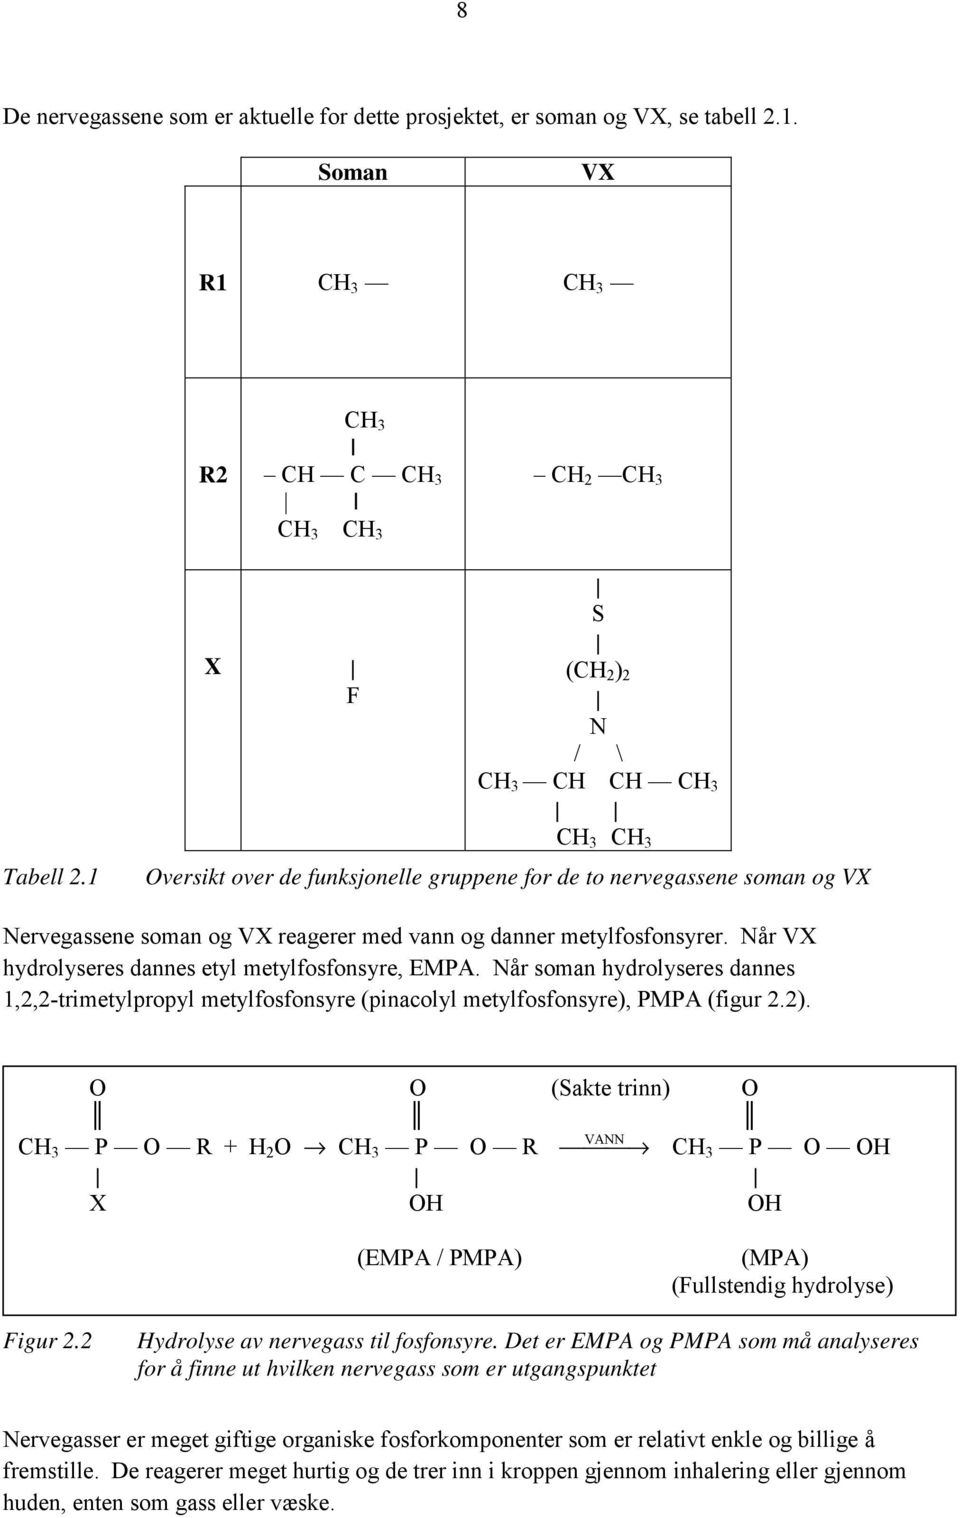 Når VX hydrolyseres dannes etyl metylfosfonsyre, EMPA. Når soman hydrolyseres dannes 1,2,2-trimetylpropyl metylfosfonsyre (pinacolyl metylfosfonsyre), PMPA (figur 2.2).